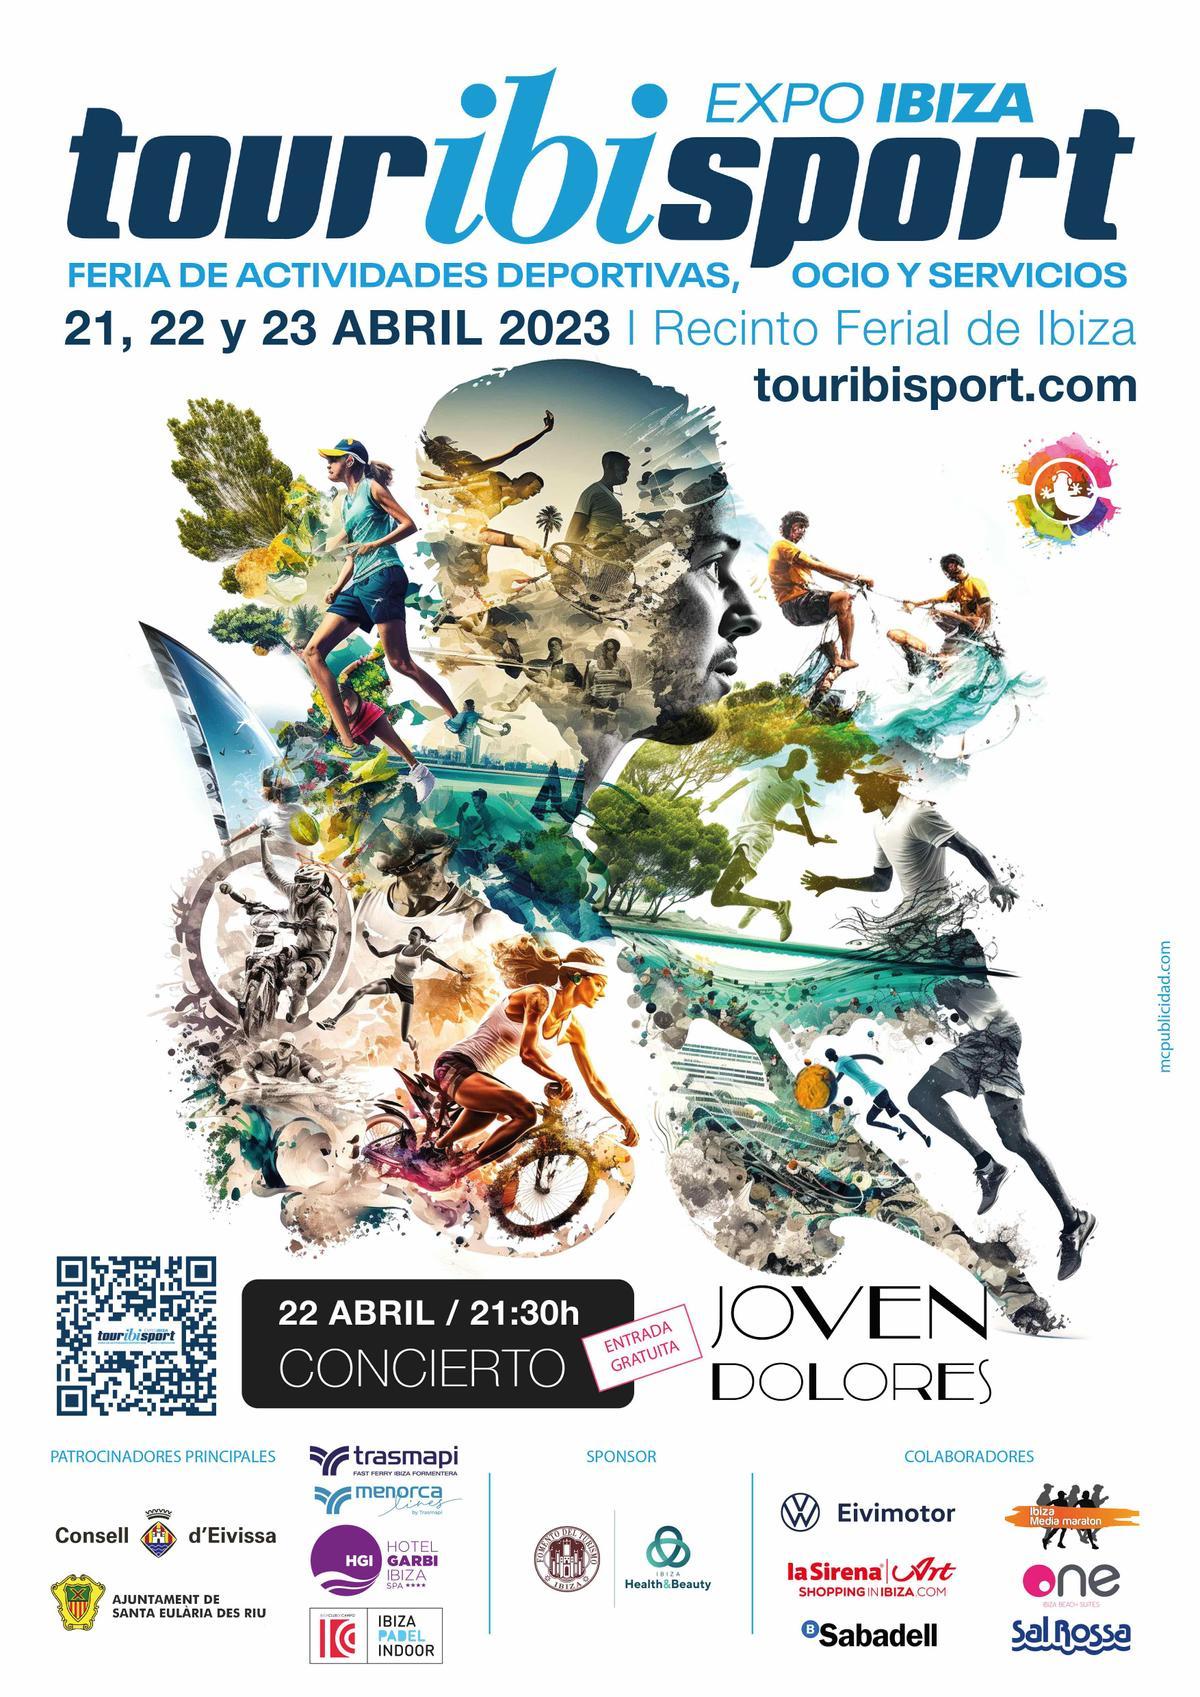 El cartel de esta tercera edición de la feria EXPO Ibiza Touribisport